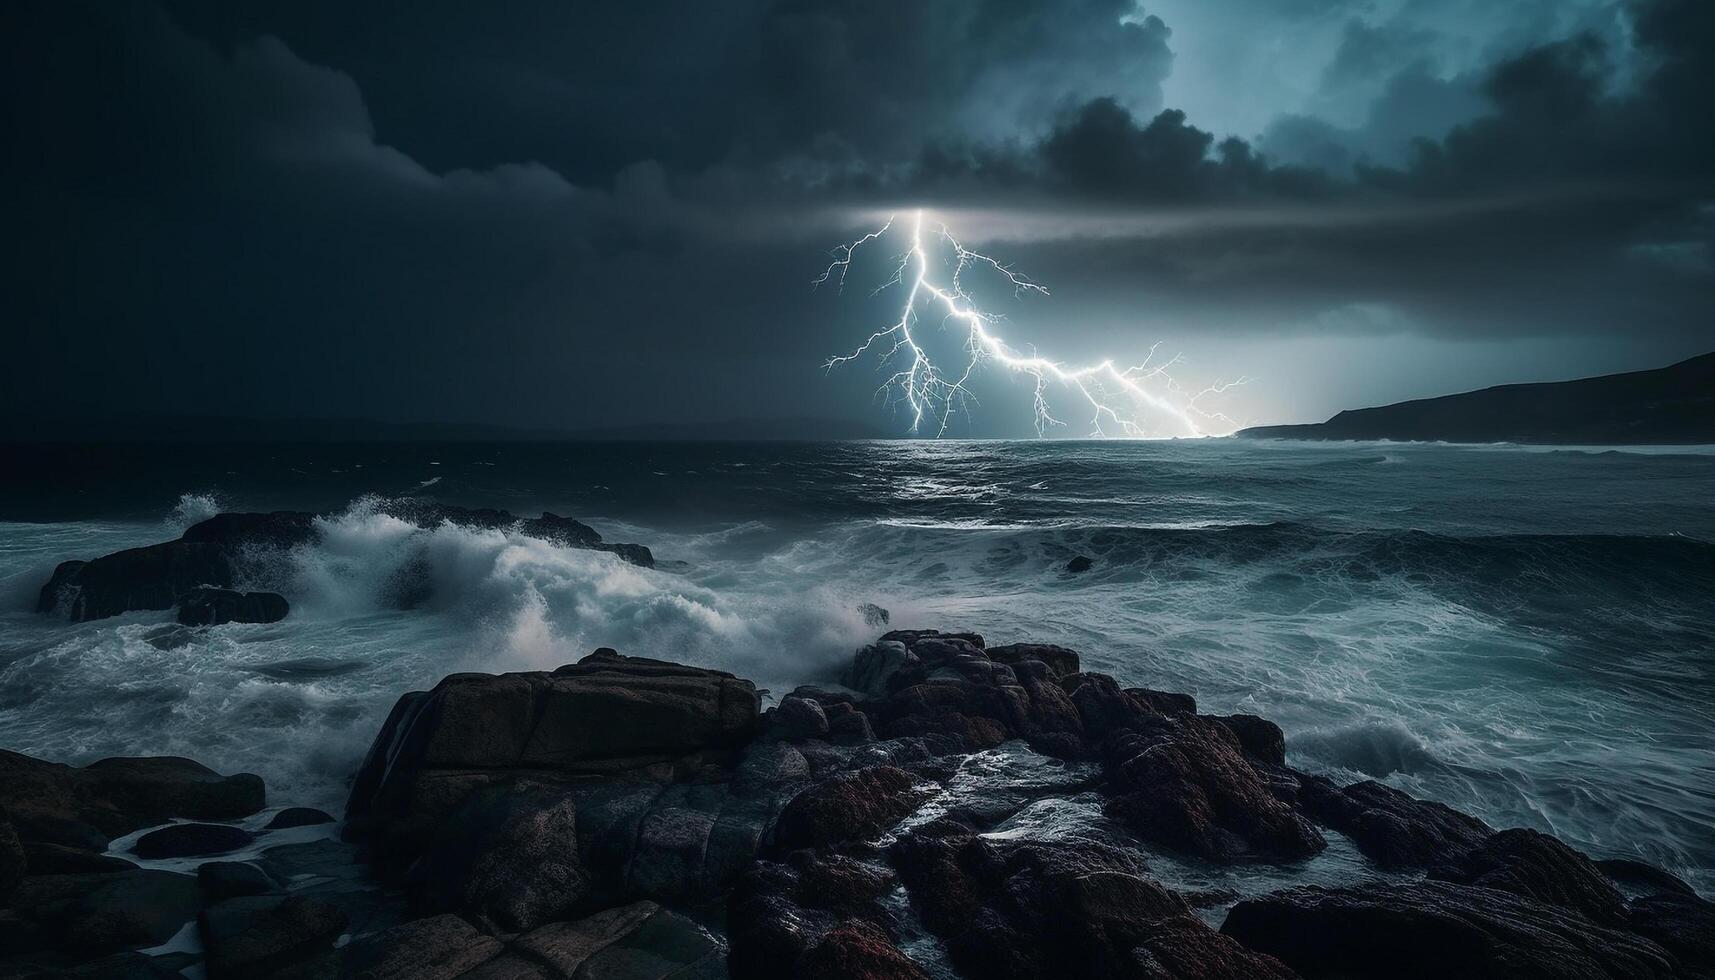 Dramatic sky, crashing waves, wet coastline, awe inspiring beauty generated by AI photo